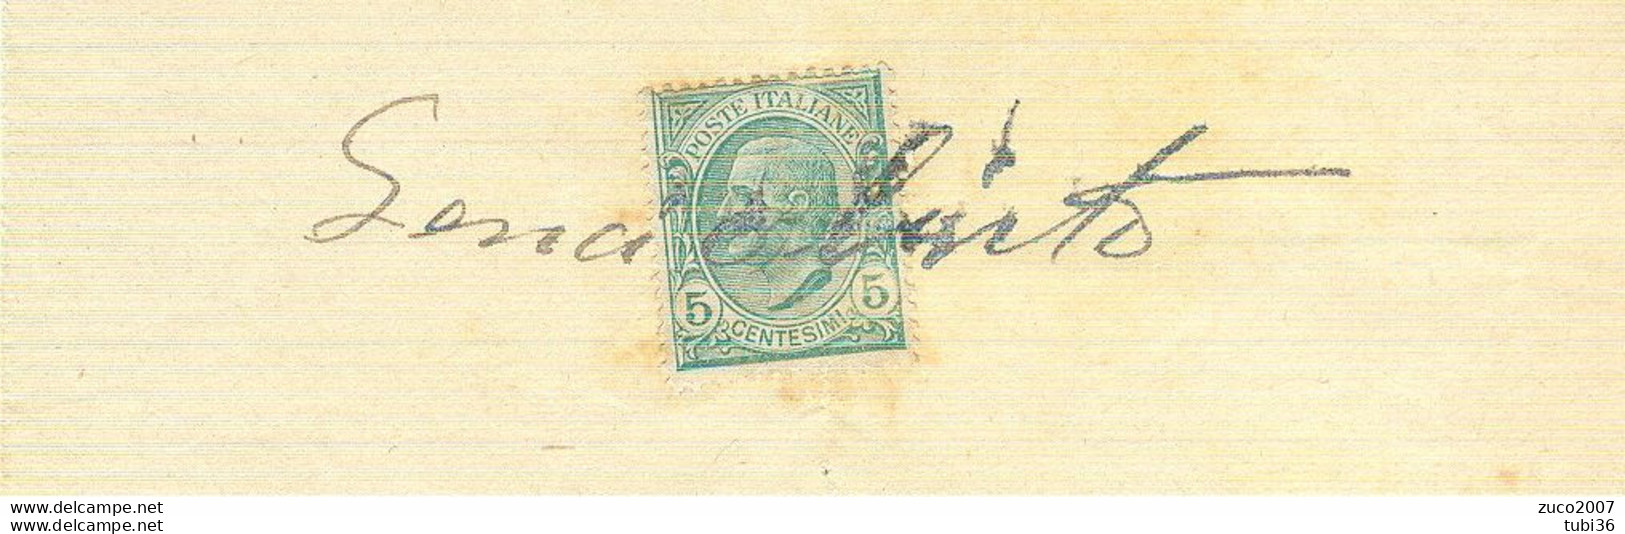 VITTORIO EMANUELE III Cent.5 (s81),SU RICEVUTA PRIVATA,anno 1914,USO MARCA DA BOLLO, - Fiscali